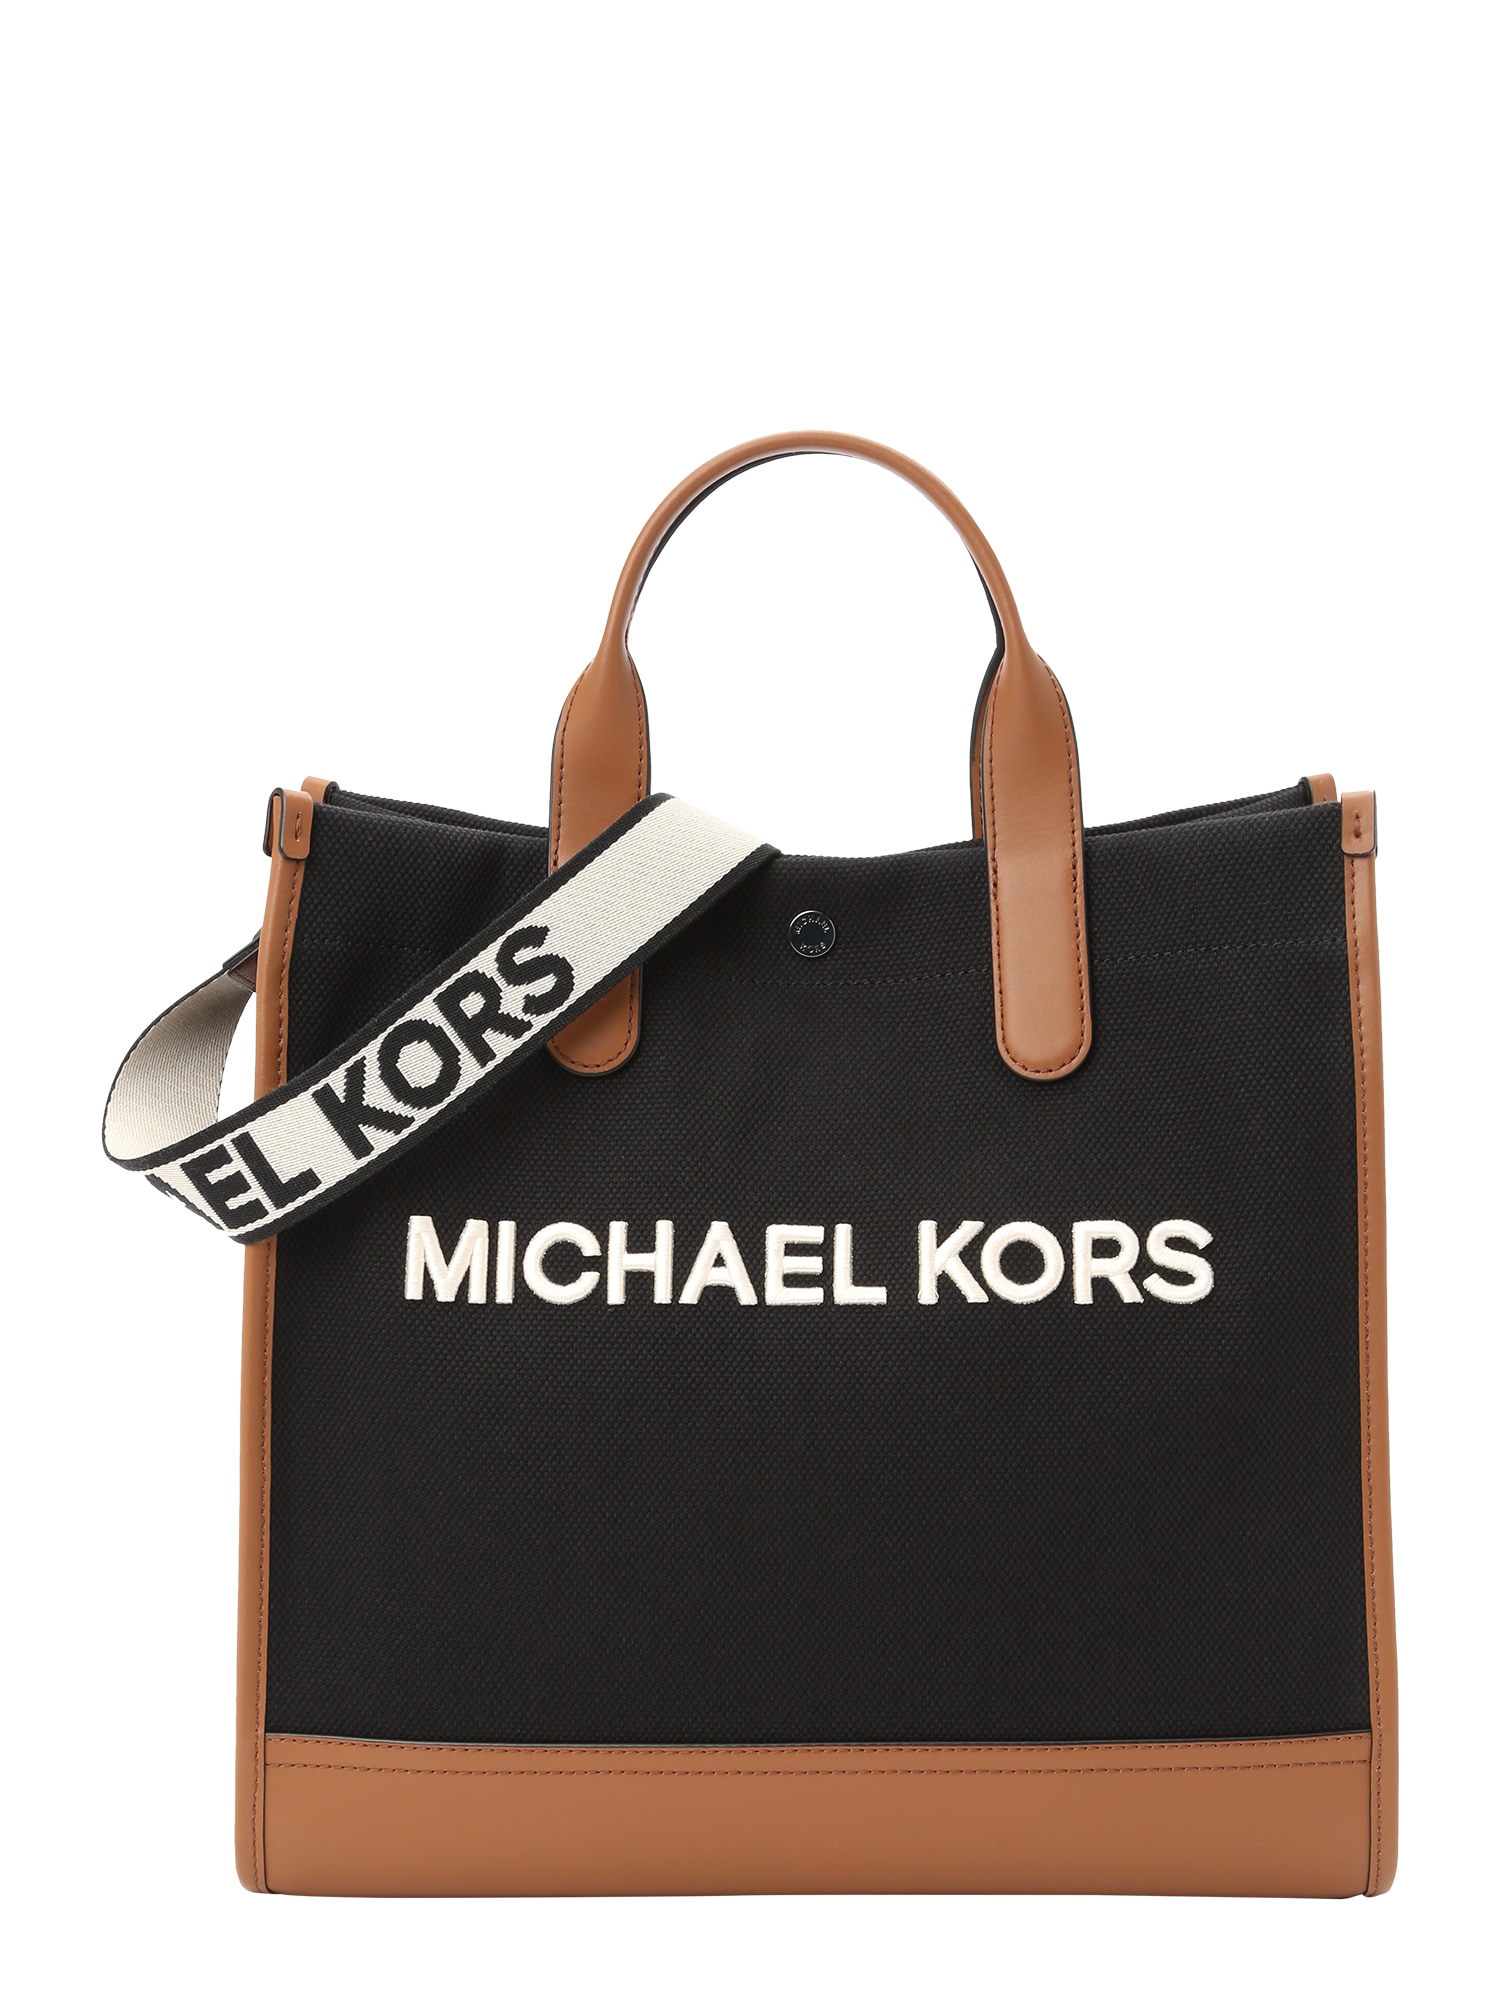 Michael Kors Pirkinių krepšys ruda / juoda